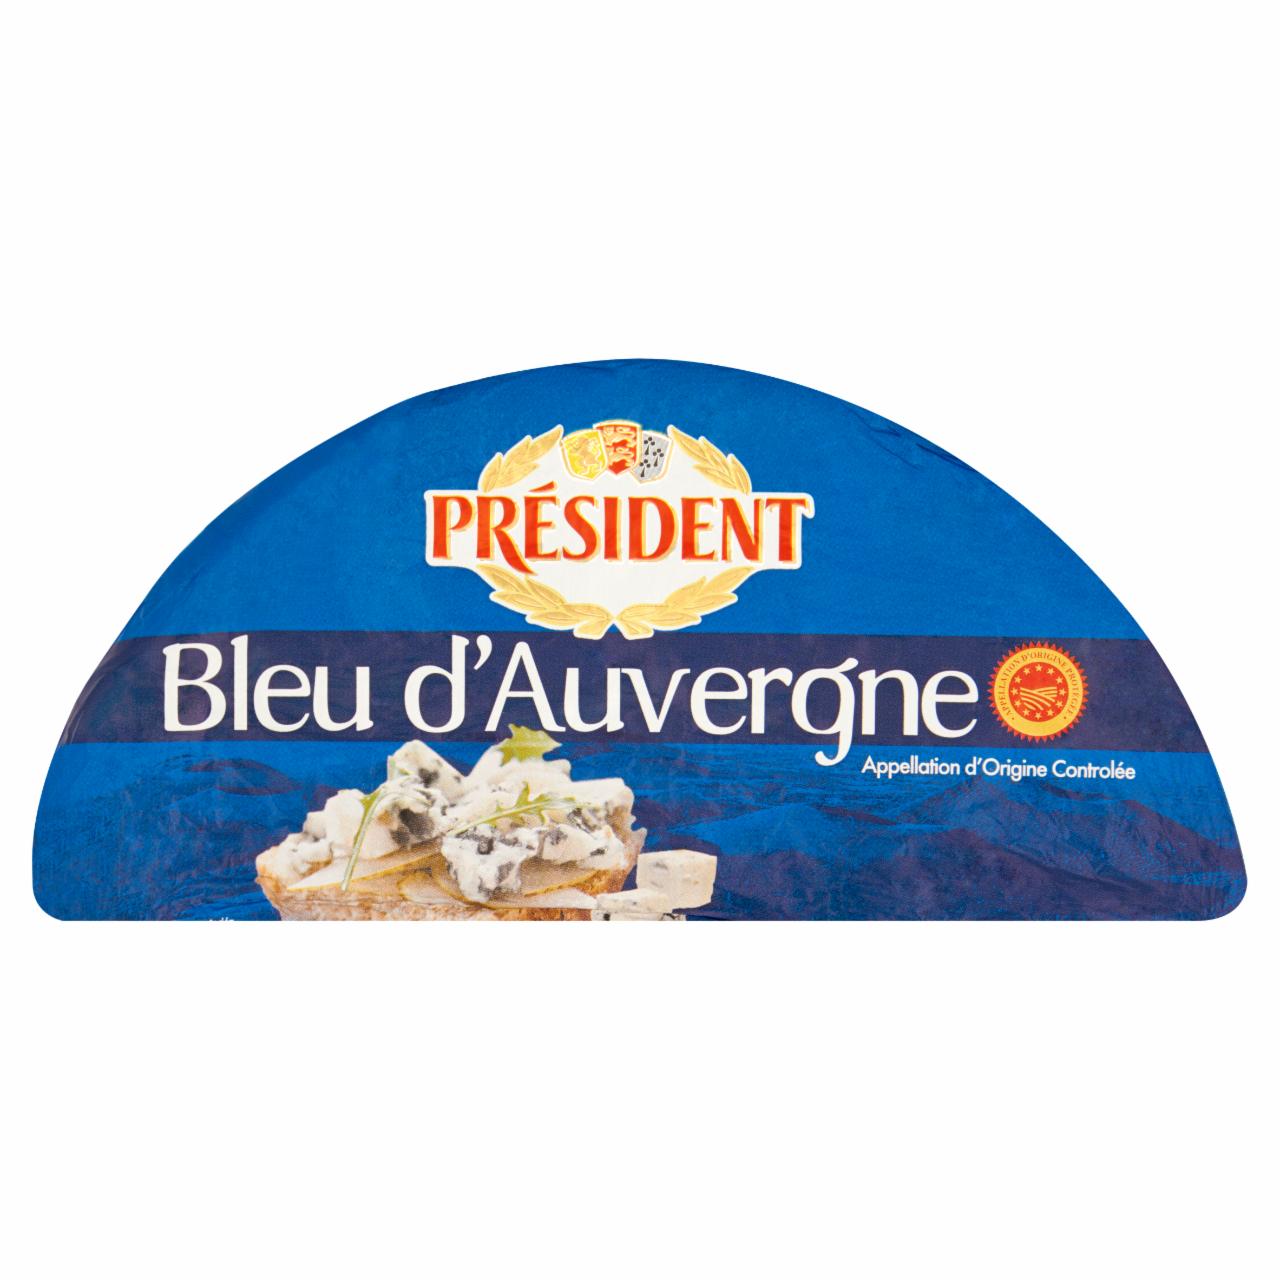 Képek - Président Bleu d'Auvergne nemespenésszel érlelt zsíros félkemény sajt